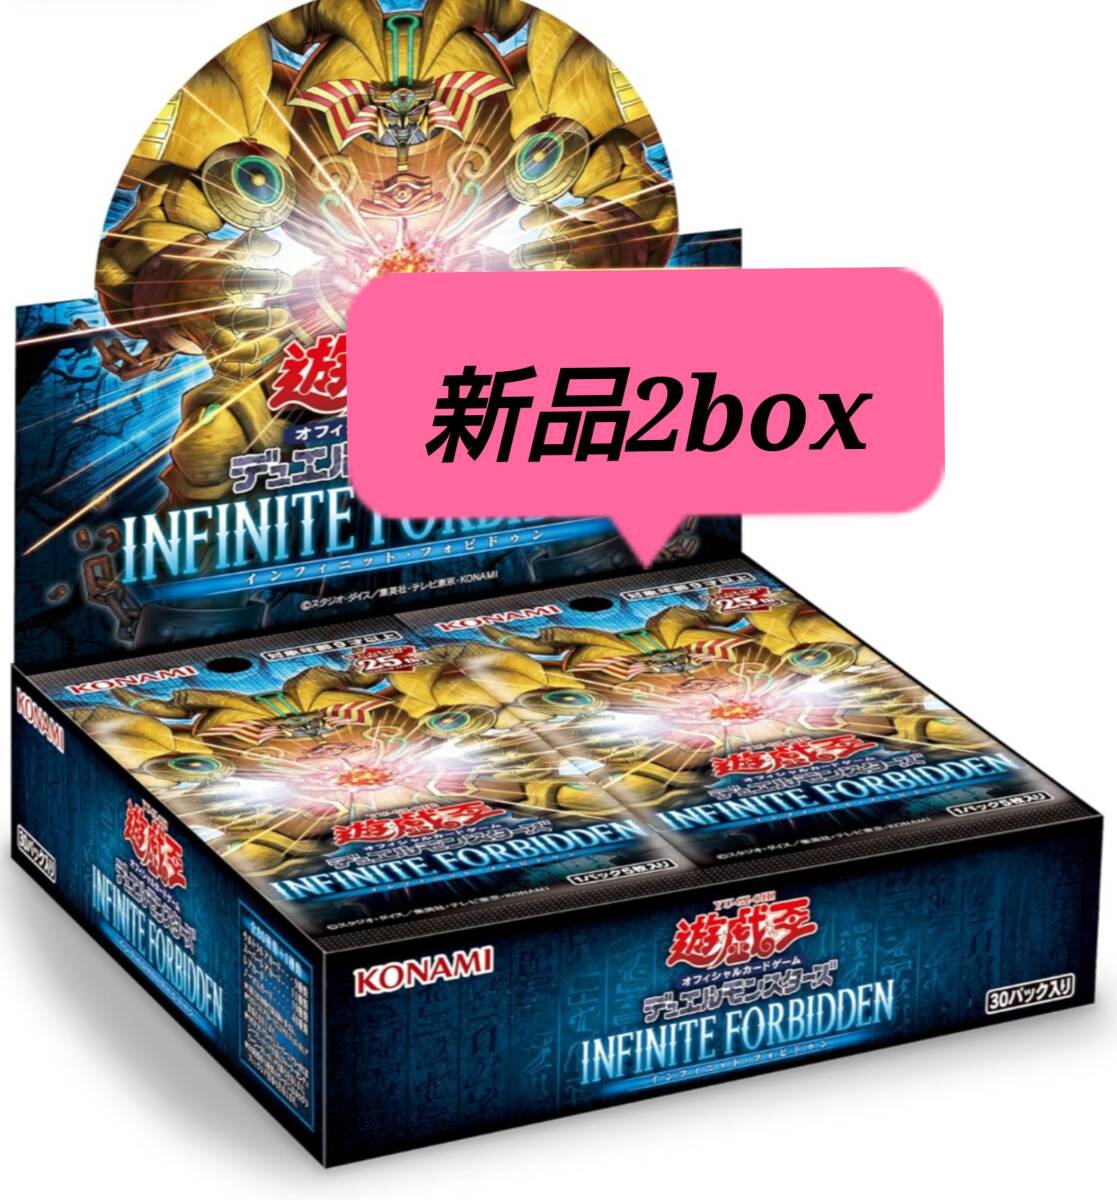 [ новый товар 2 box ] Infinite fobidun[ Yugioh ]infinite forbidden [yugioh]